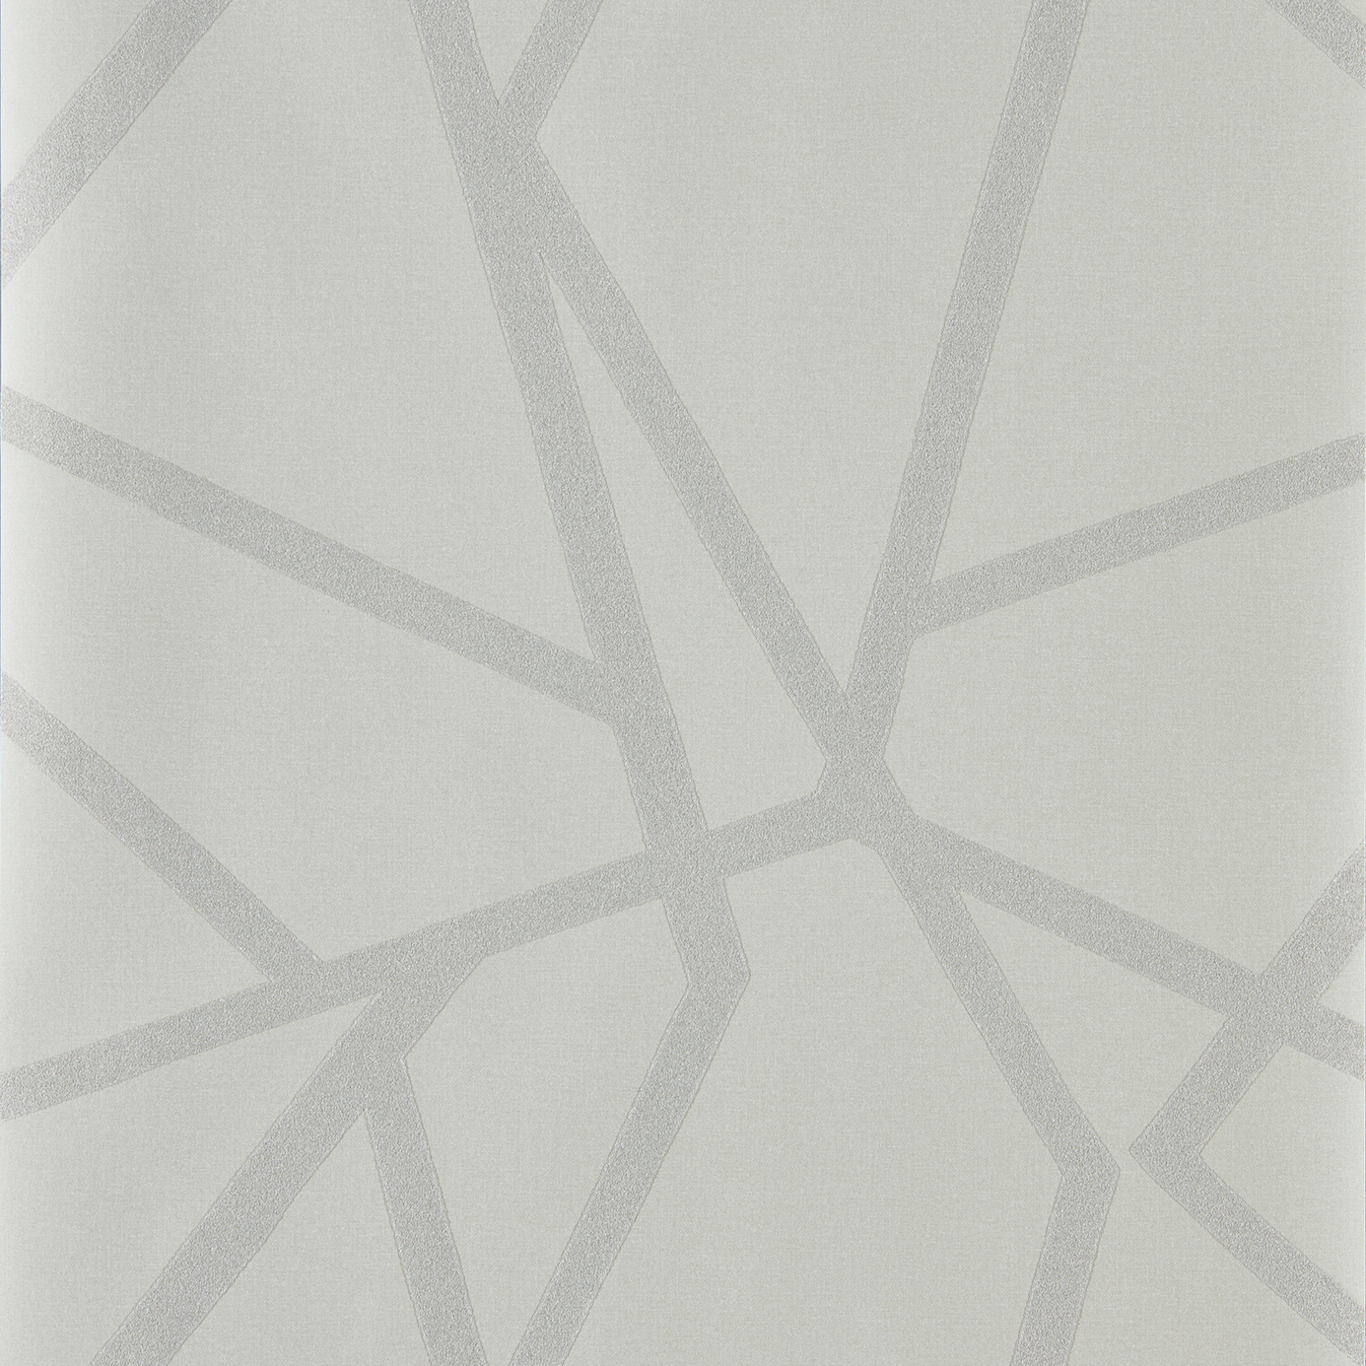 Sumi Shimmer Linen/Stone Wallpaper by HAR